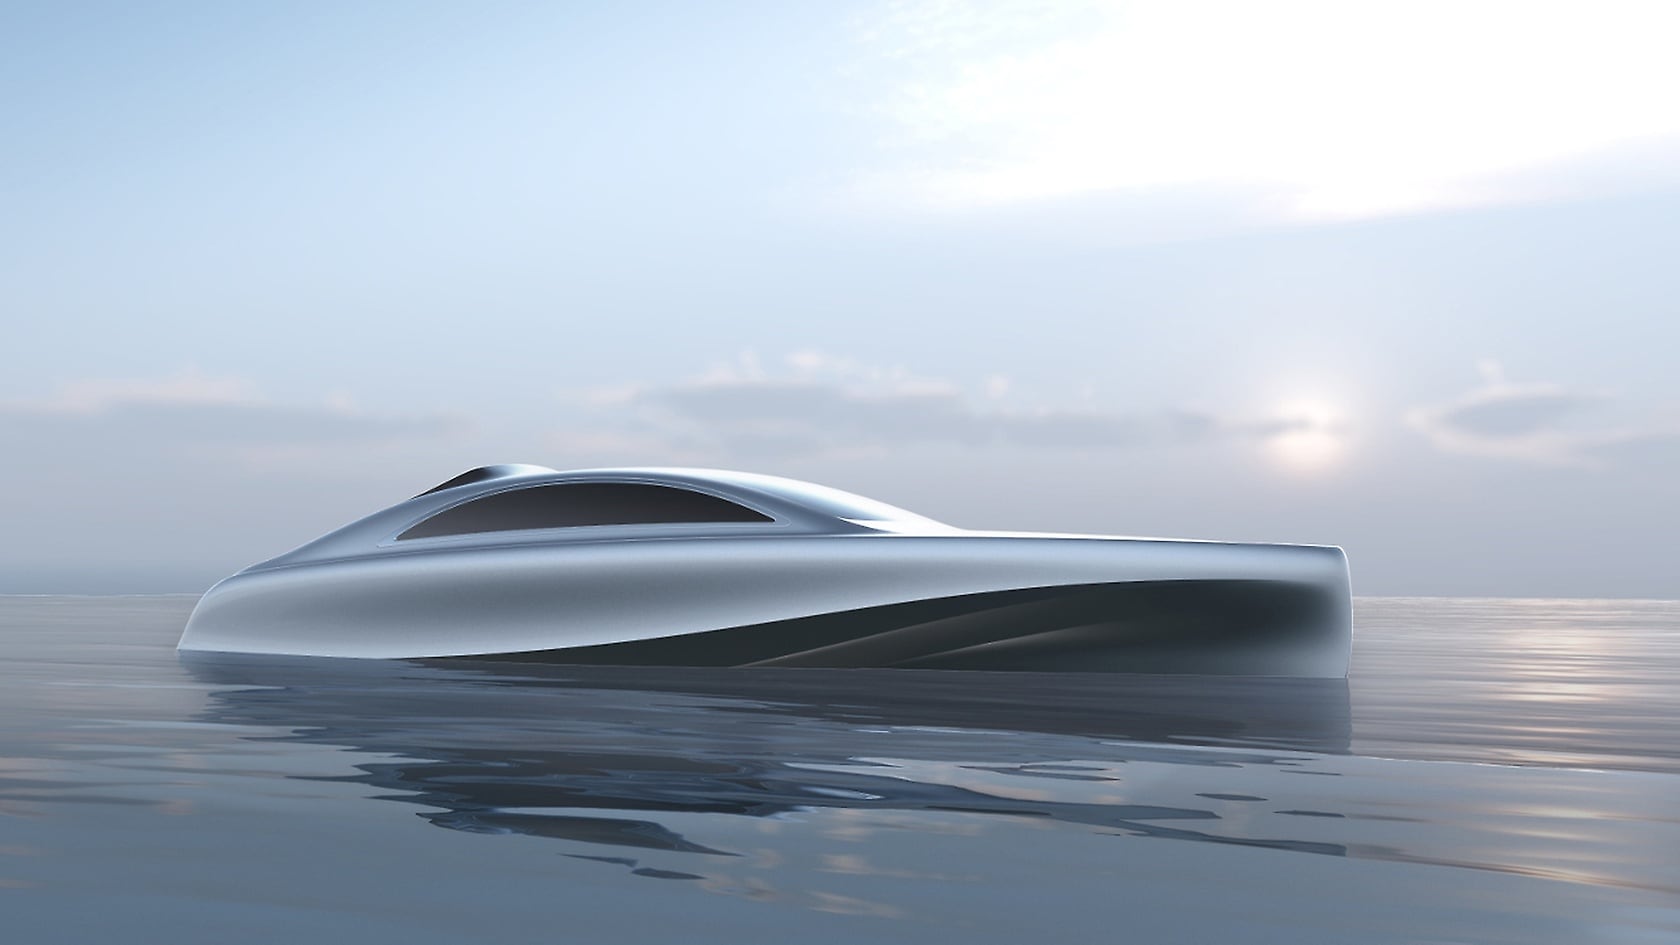 Luxus-Motoryacht „Arrow460–Granturismo“ von Silver Arrows Marine, gestaltet von Mercedes-Benz.